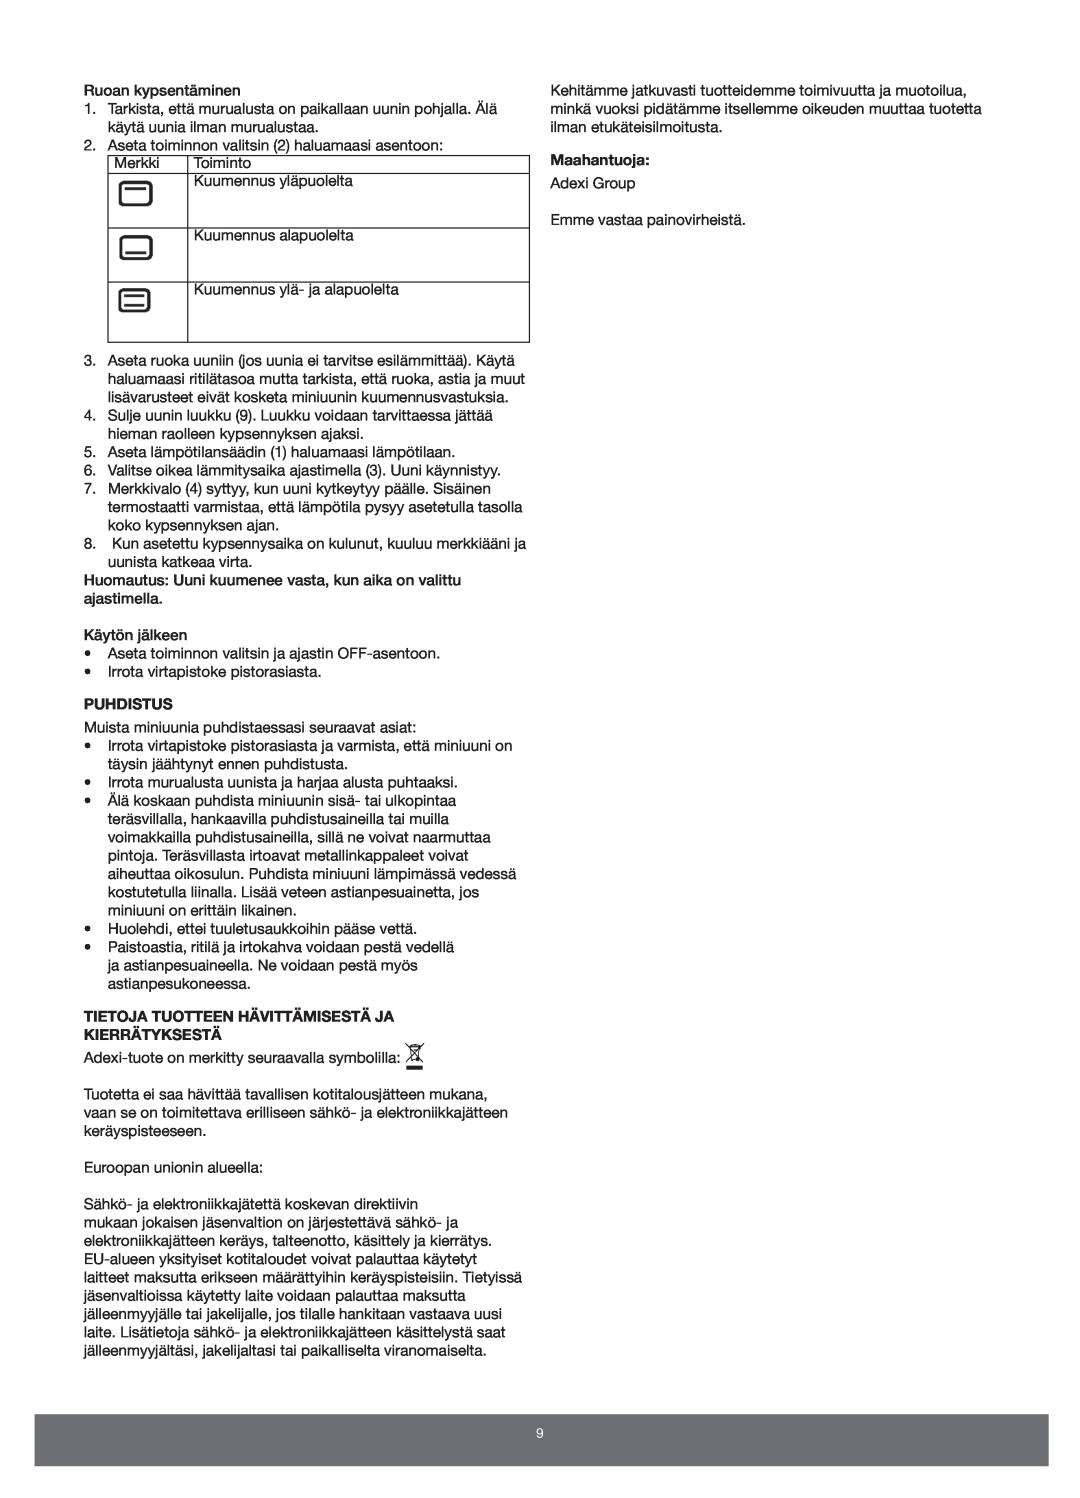 Melissa 651-007 manual Puhdistus, Tietoja Tuotteen Hävittämisestä Ja Kierrätyksestä, Maahantuoja 